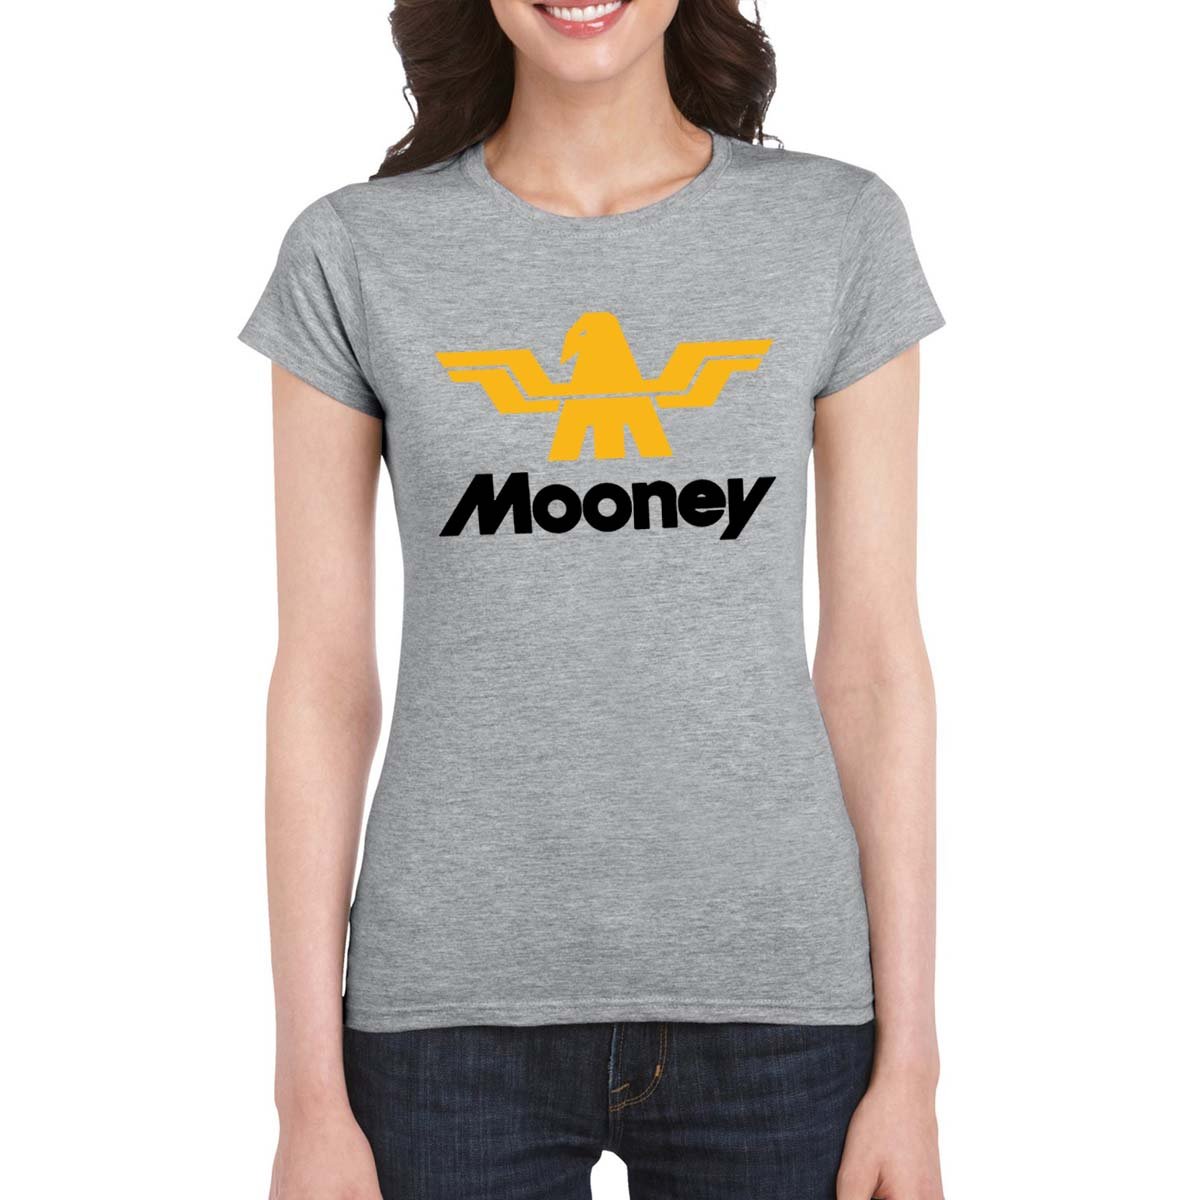 MOONEY Women's T-Shirt